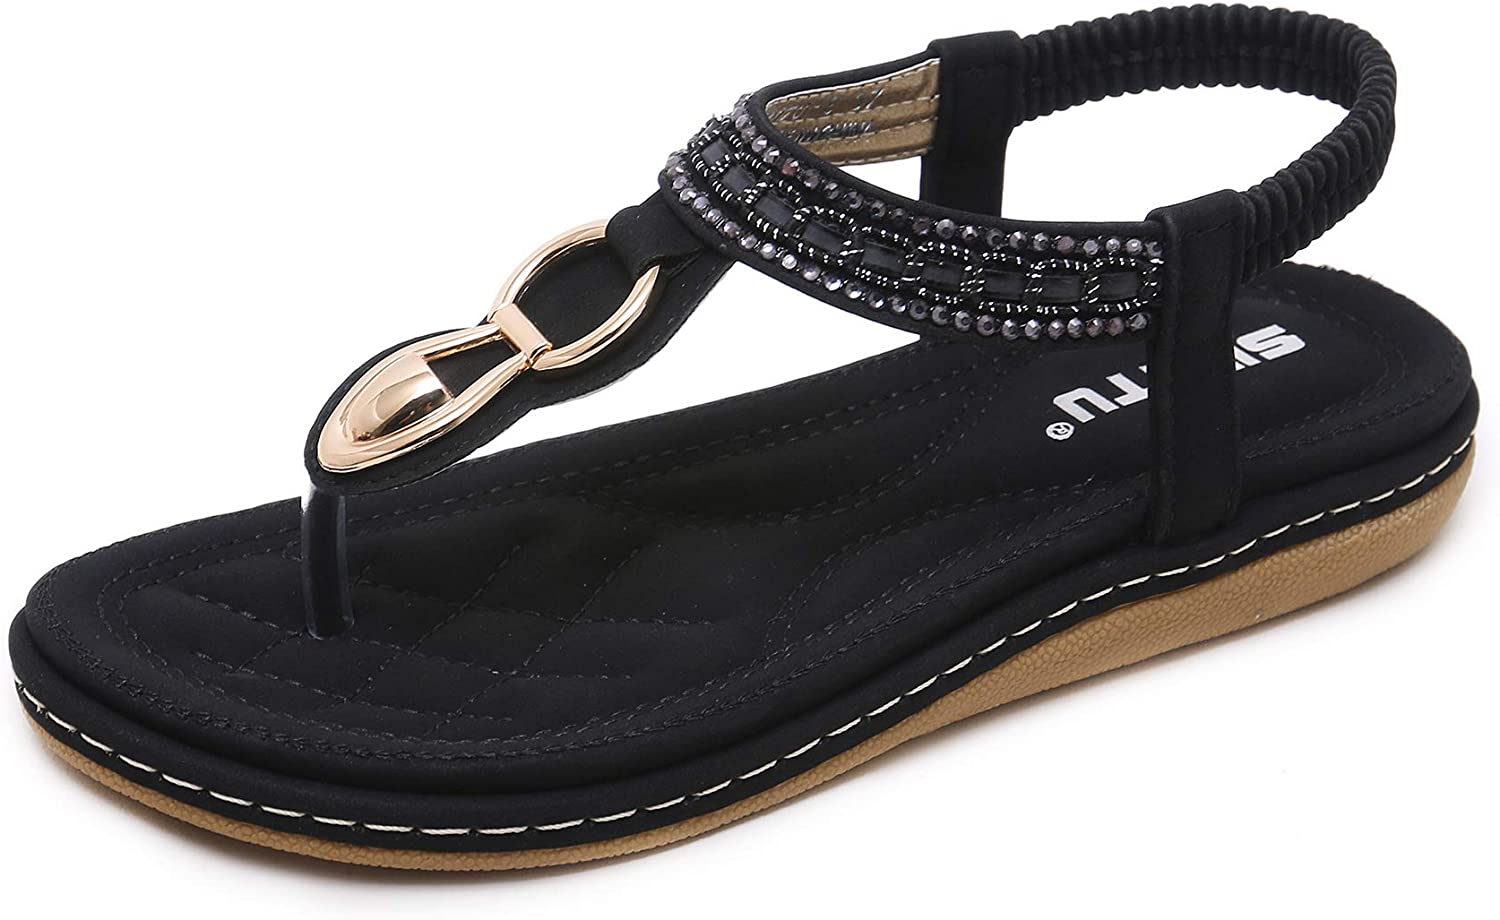 Women's Summer Sandals Casual Comfortable Flip Flops Bohemian Beach ...